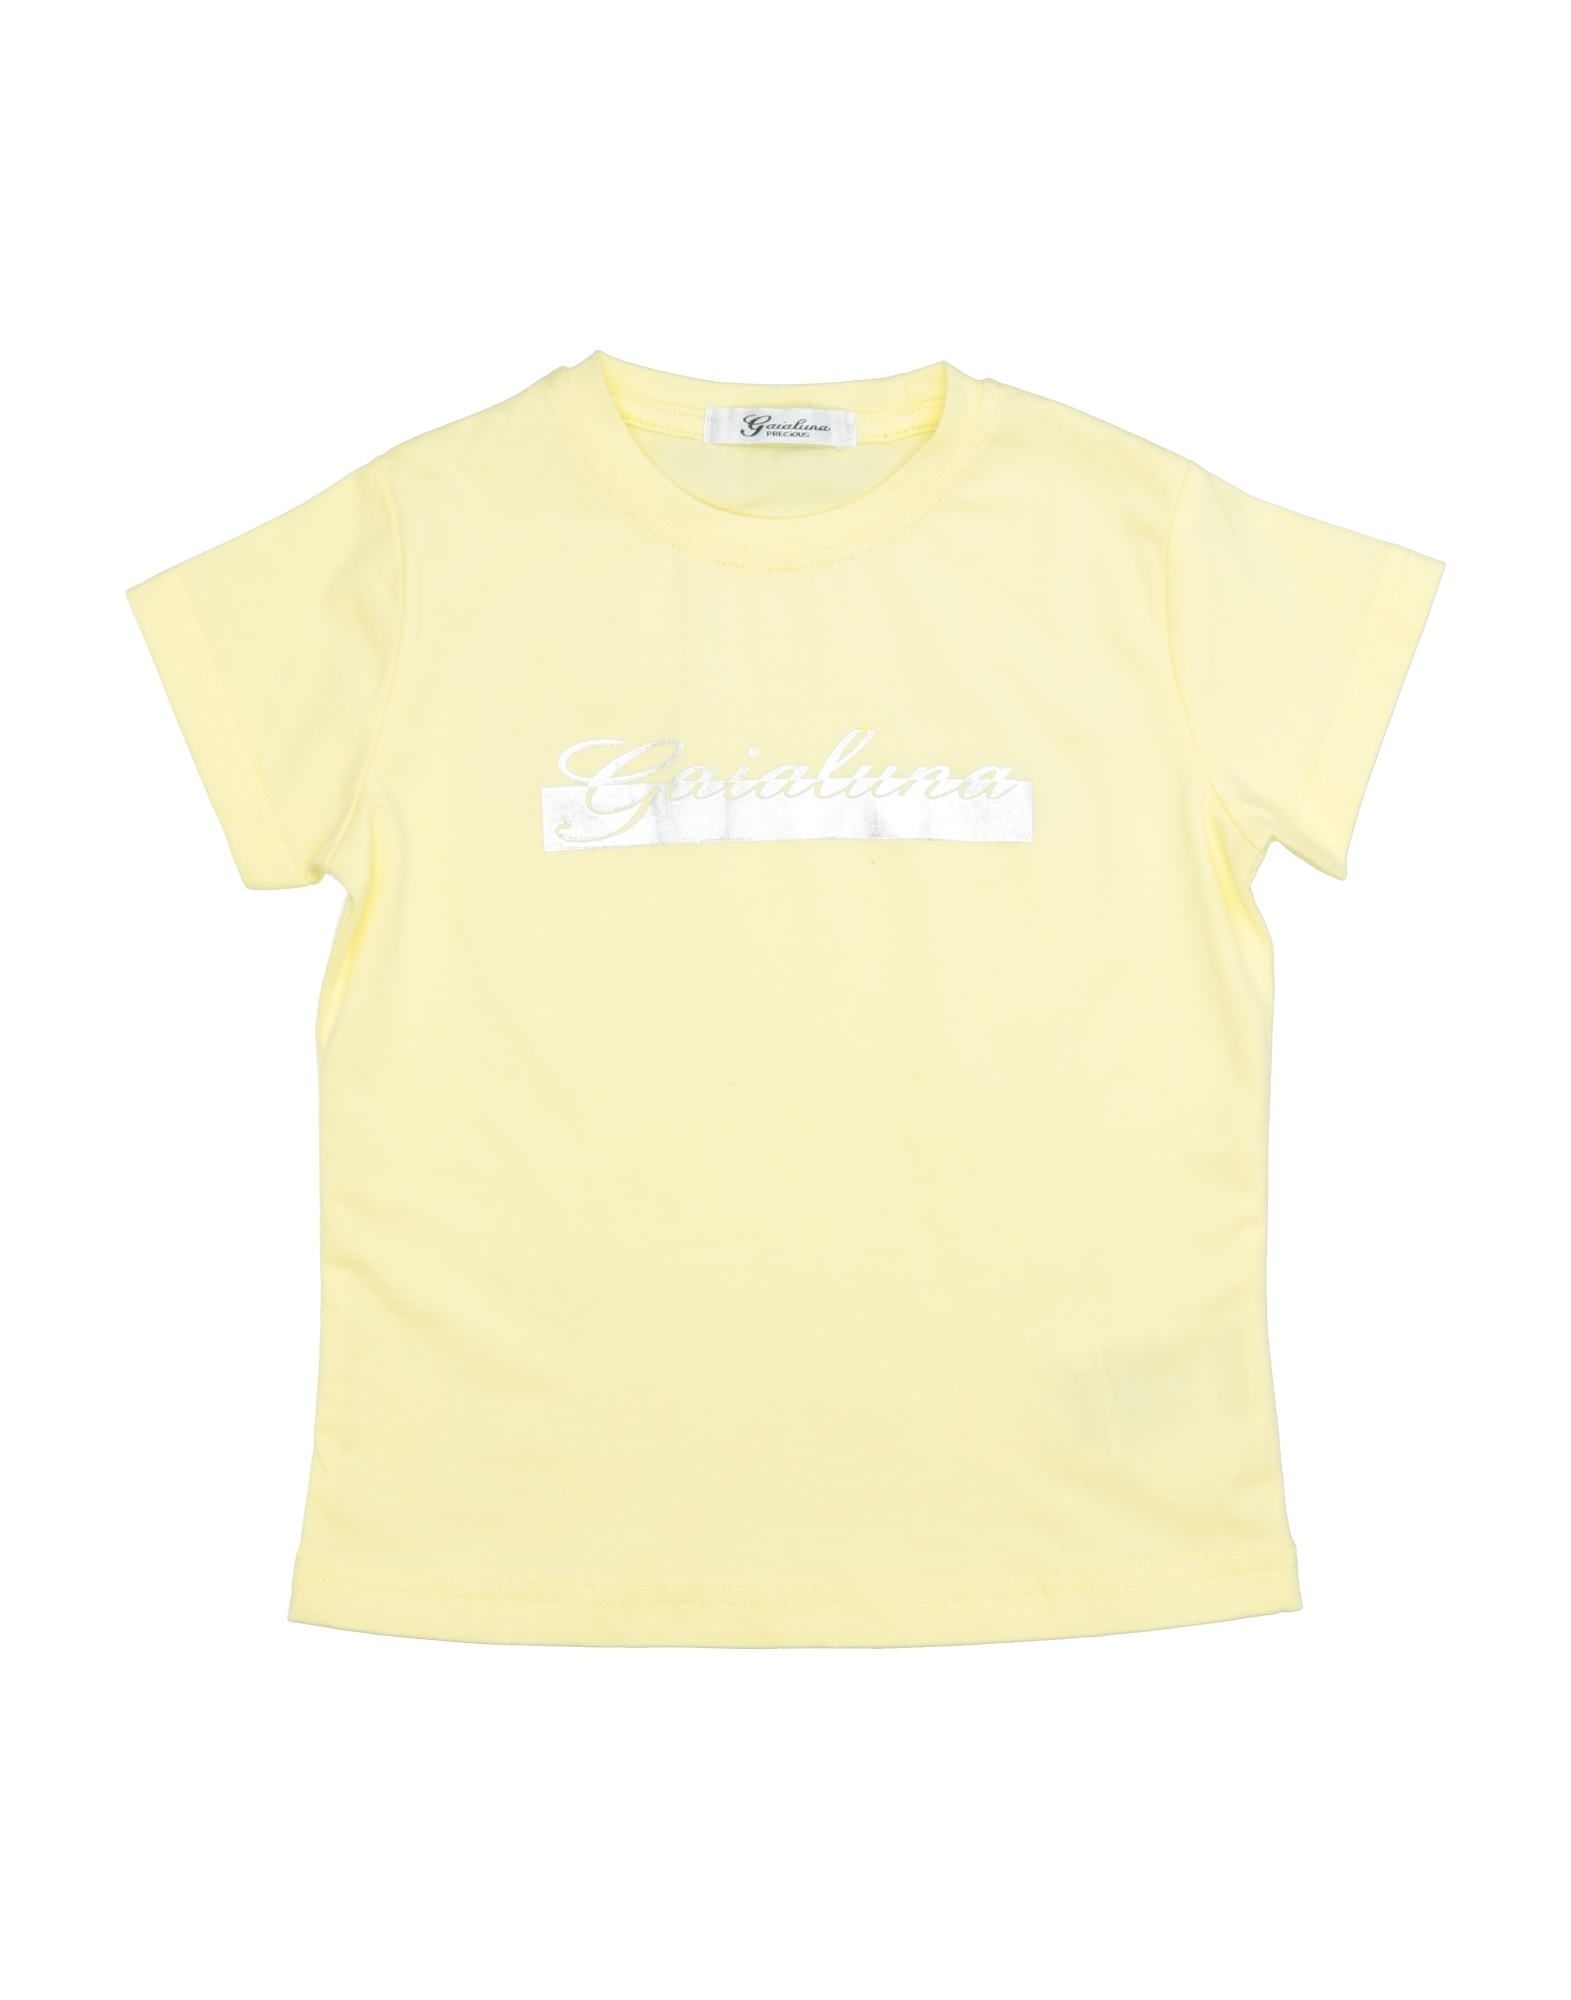 Gaialuna Kids' T-shirts In Yellow